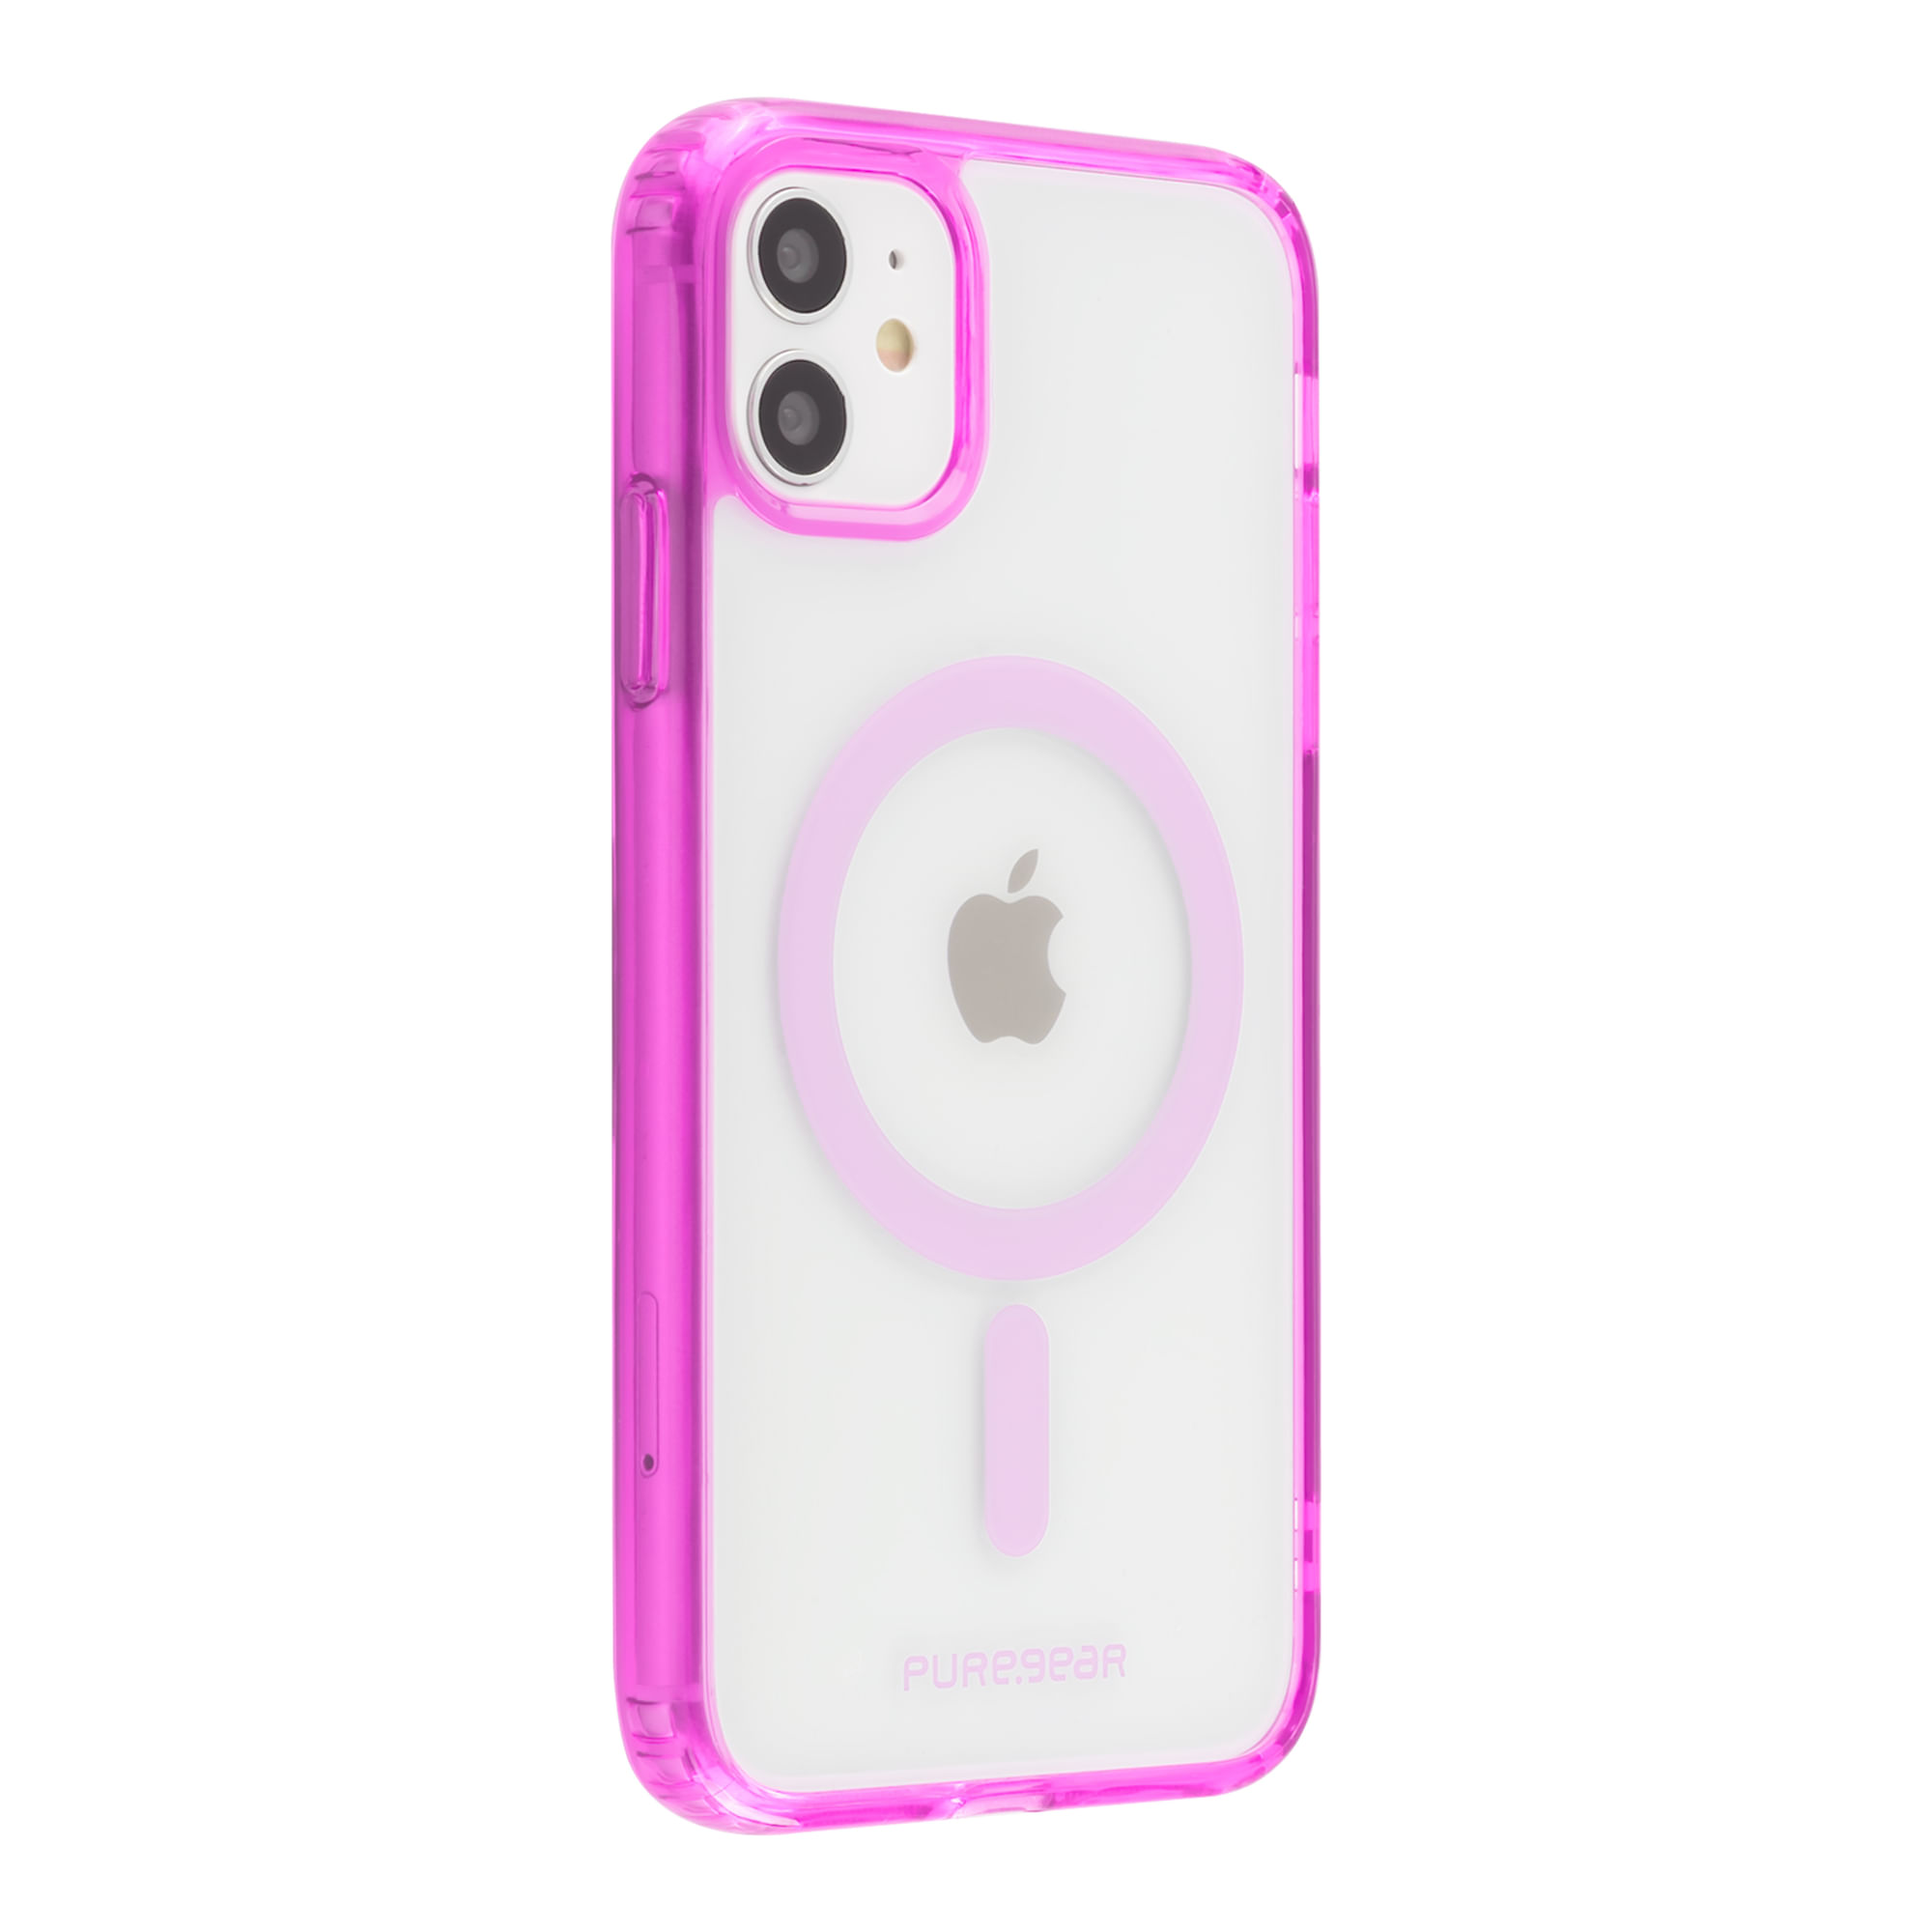 Protector Slim Shell Magsafe iPhone 11 - Mobo - Mobo